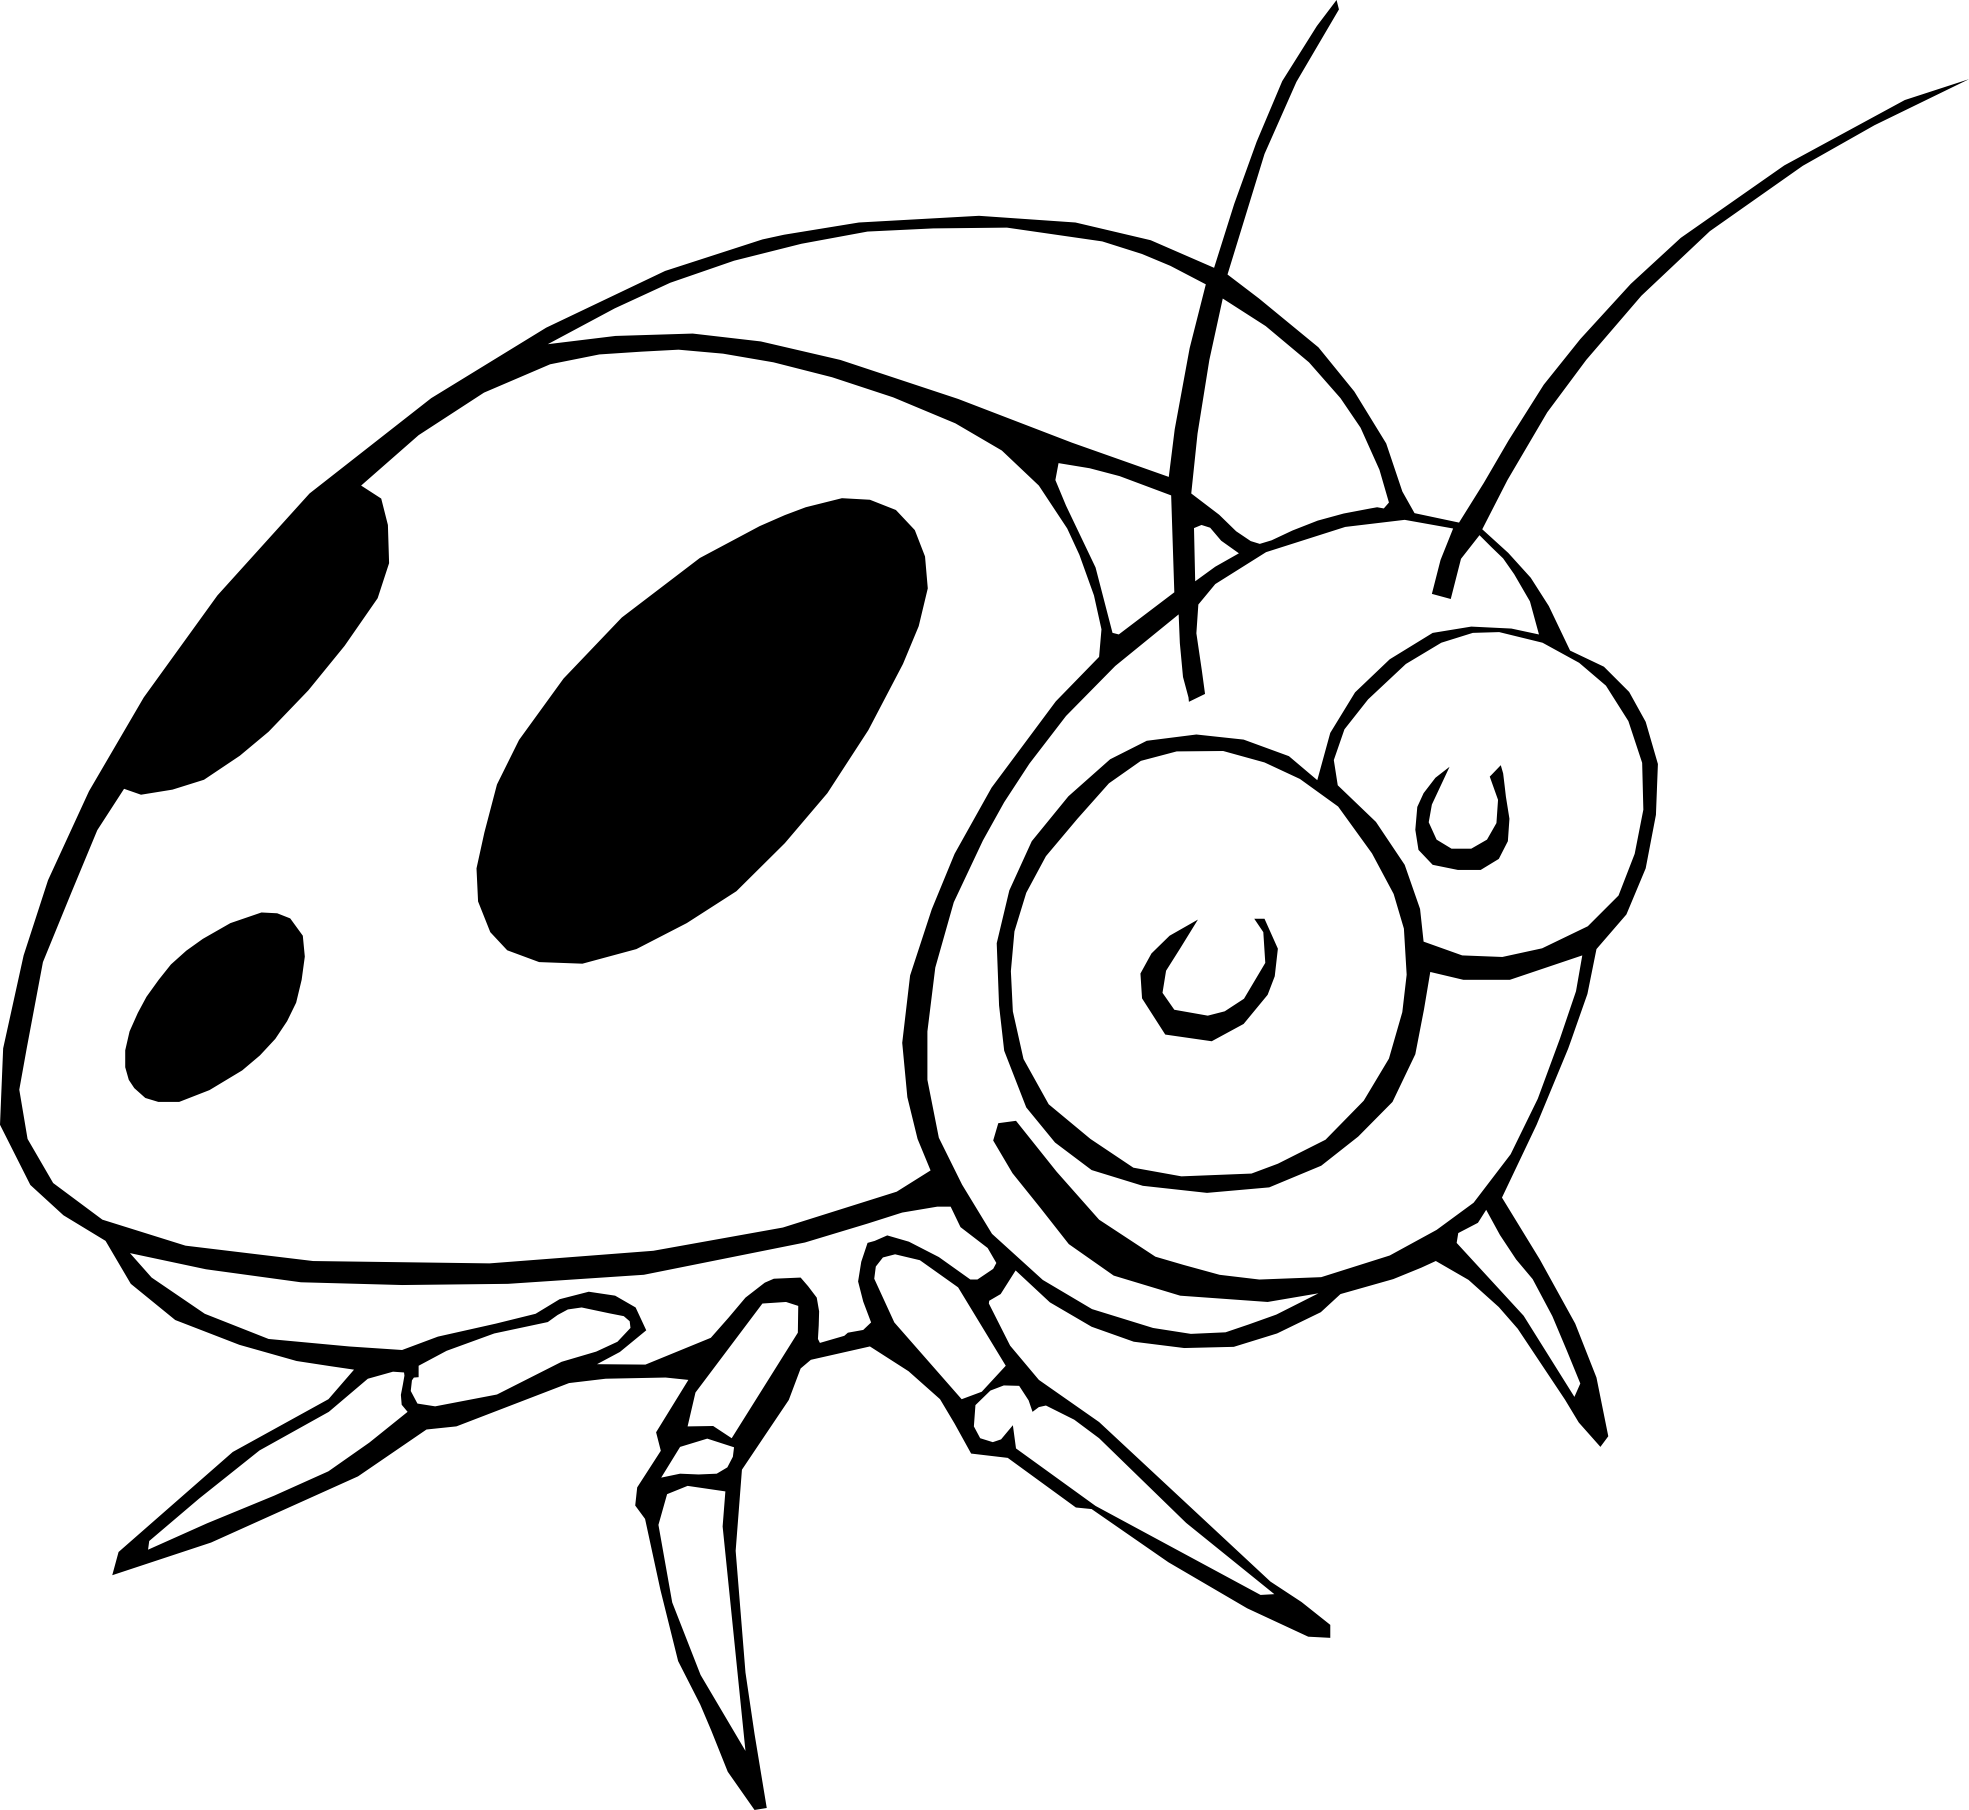 clipart ladybug black and white - photo #18